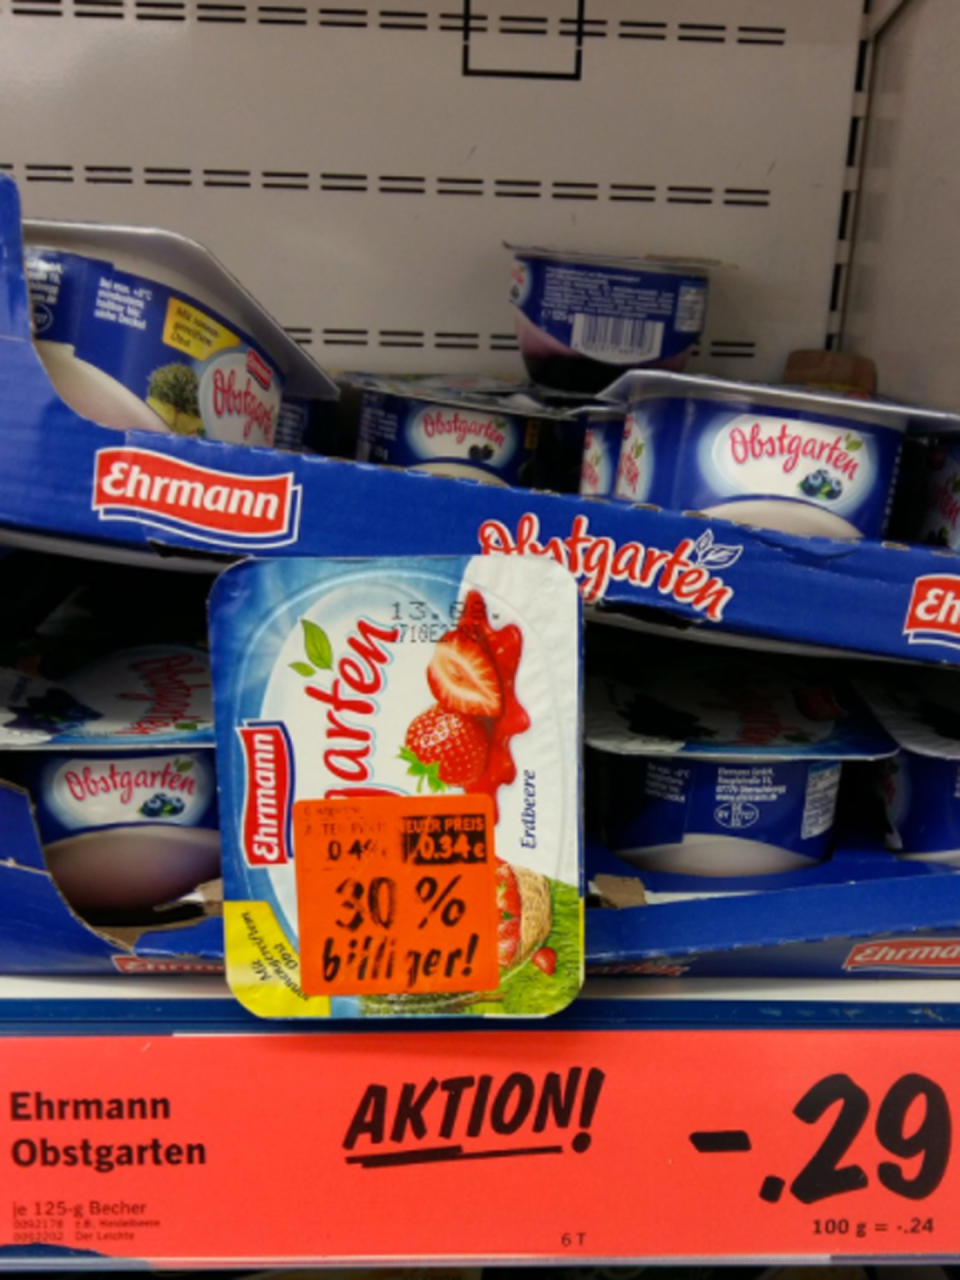 <p>Moment mal: Der Joghurt ist eine Woche abgelaufen, dafür aber um 30 Prozent reduziert. Dafür kostet der frische Joghurt trotzdem noch fünf Cent weniger. Egal, wie man sich entscheidet, man macht ein Schnäppchen – und für fünf Cent drauf gibt es eventuell sogar Bauchschmerzen inklusive. (Bild: twitter.com/ZurQuelle_Mag) </p>